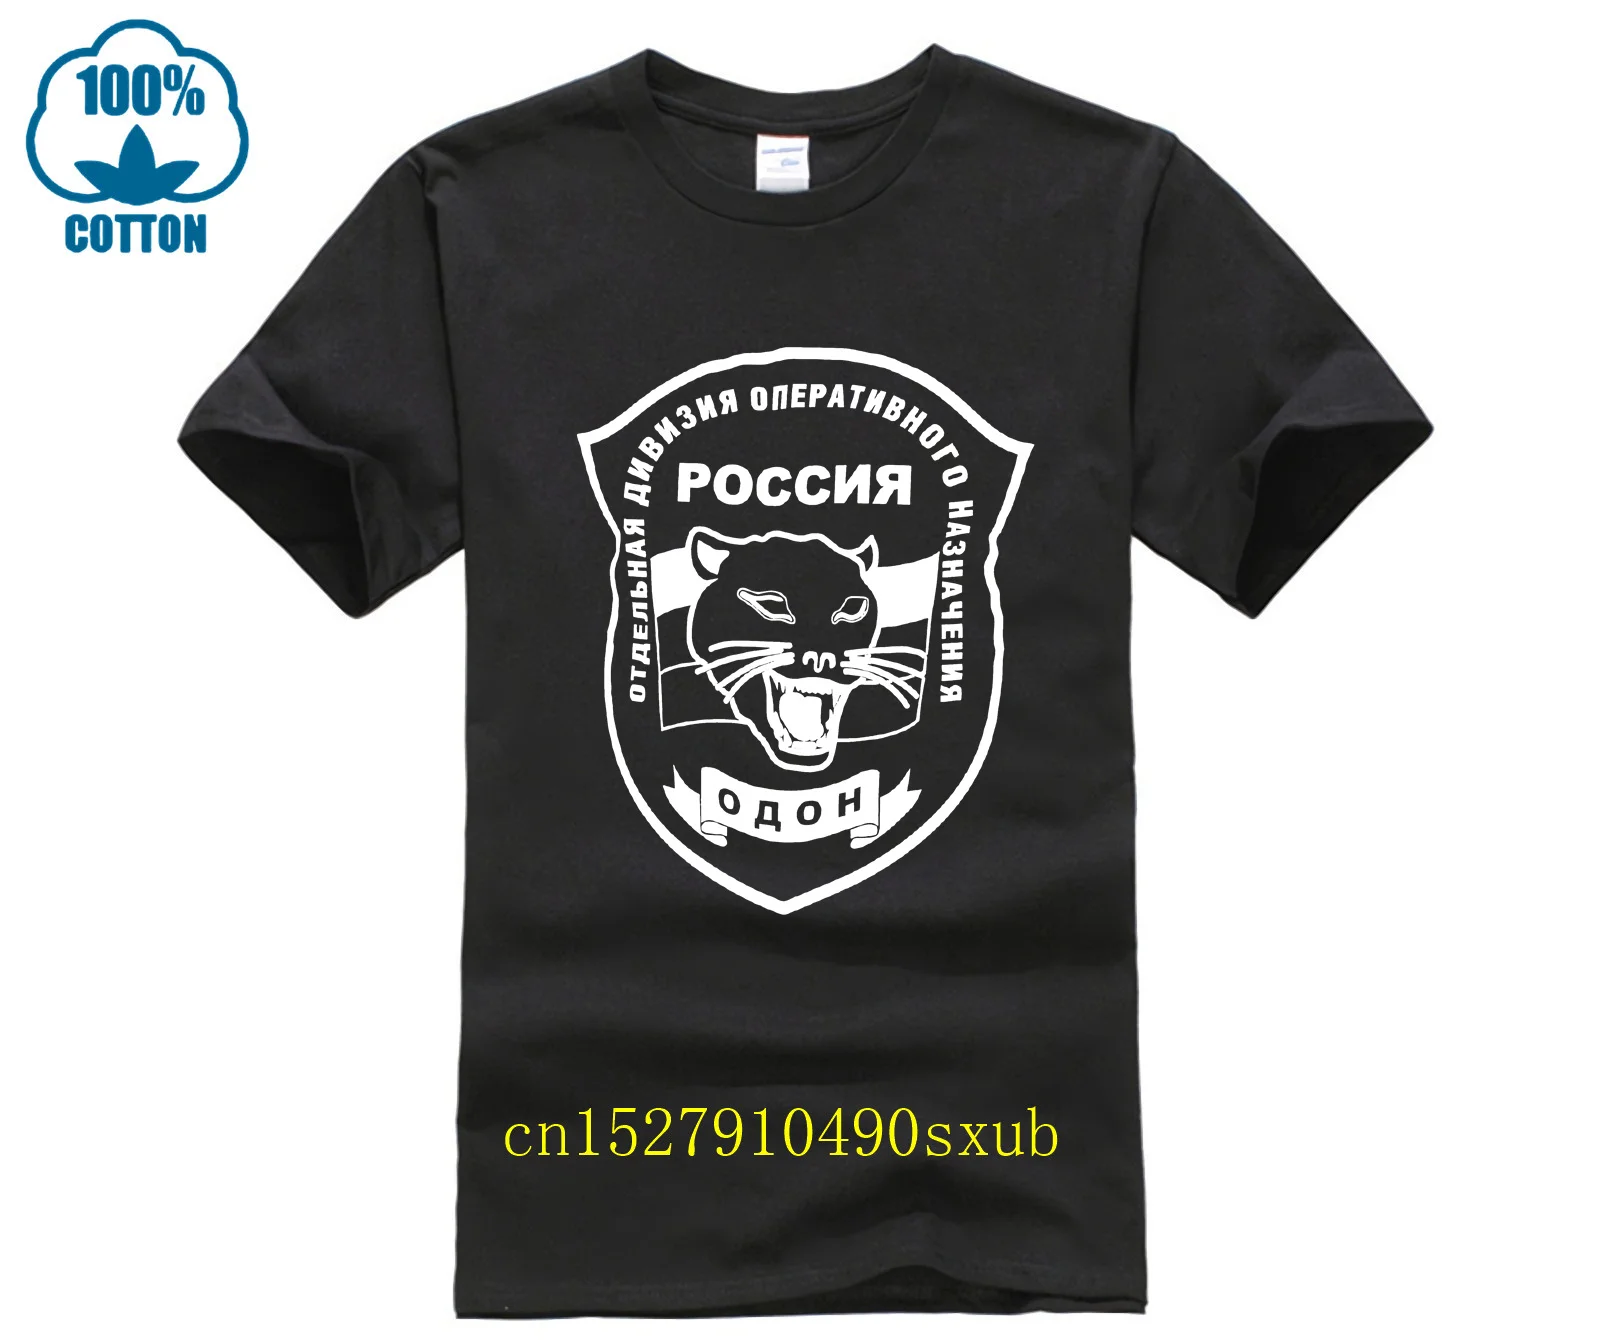 2023 футболки для мужчин Хлопковые русские футболки Путин Сталин 2 мировая война Военная армия Specnaz VDV футболки с вежливыми людьми СССР